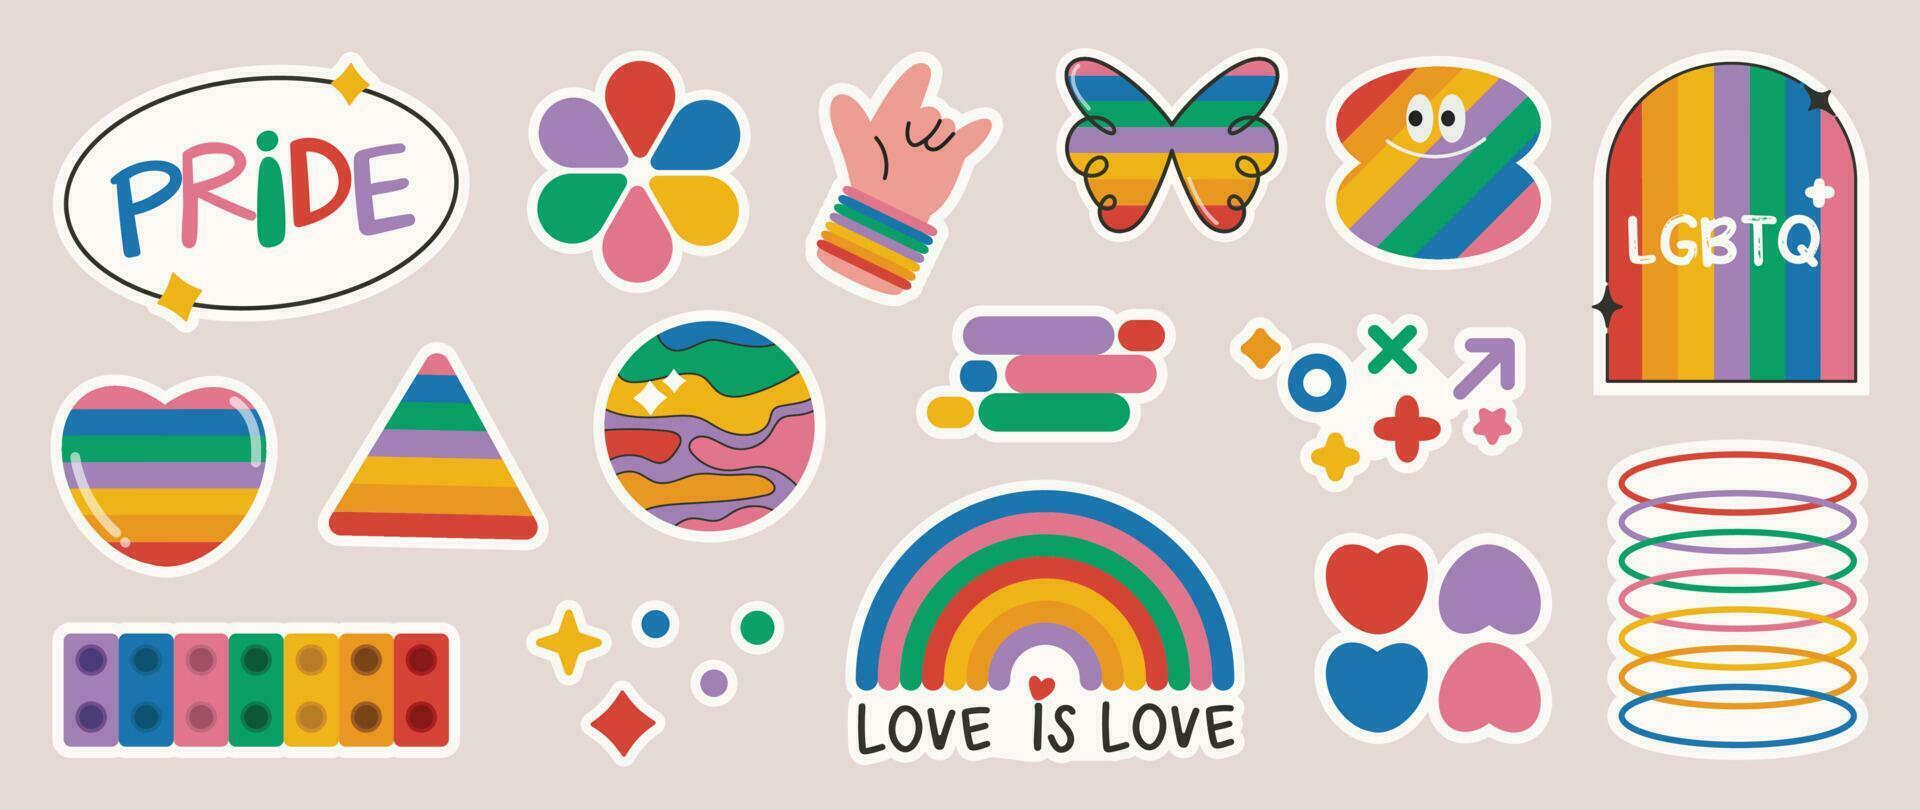 Lycklig stolthet lgbtq element uppsättning. lgbtq gemenskap symboler med regnbåge flagga, hjärta, blomma. element illustrerade för stolthet månad, bisexuell, transpersoner, kön jämlikhet, klistermärke, rättigheter begrepp. vektor